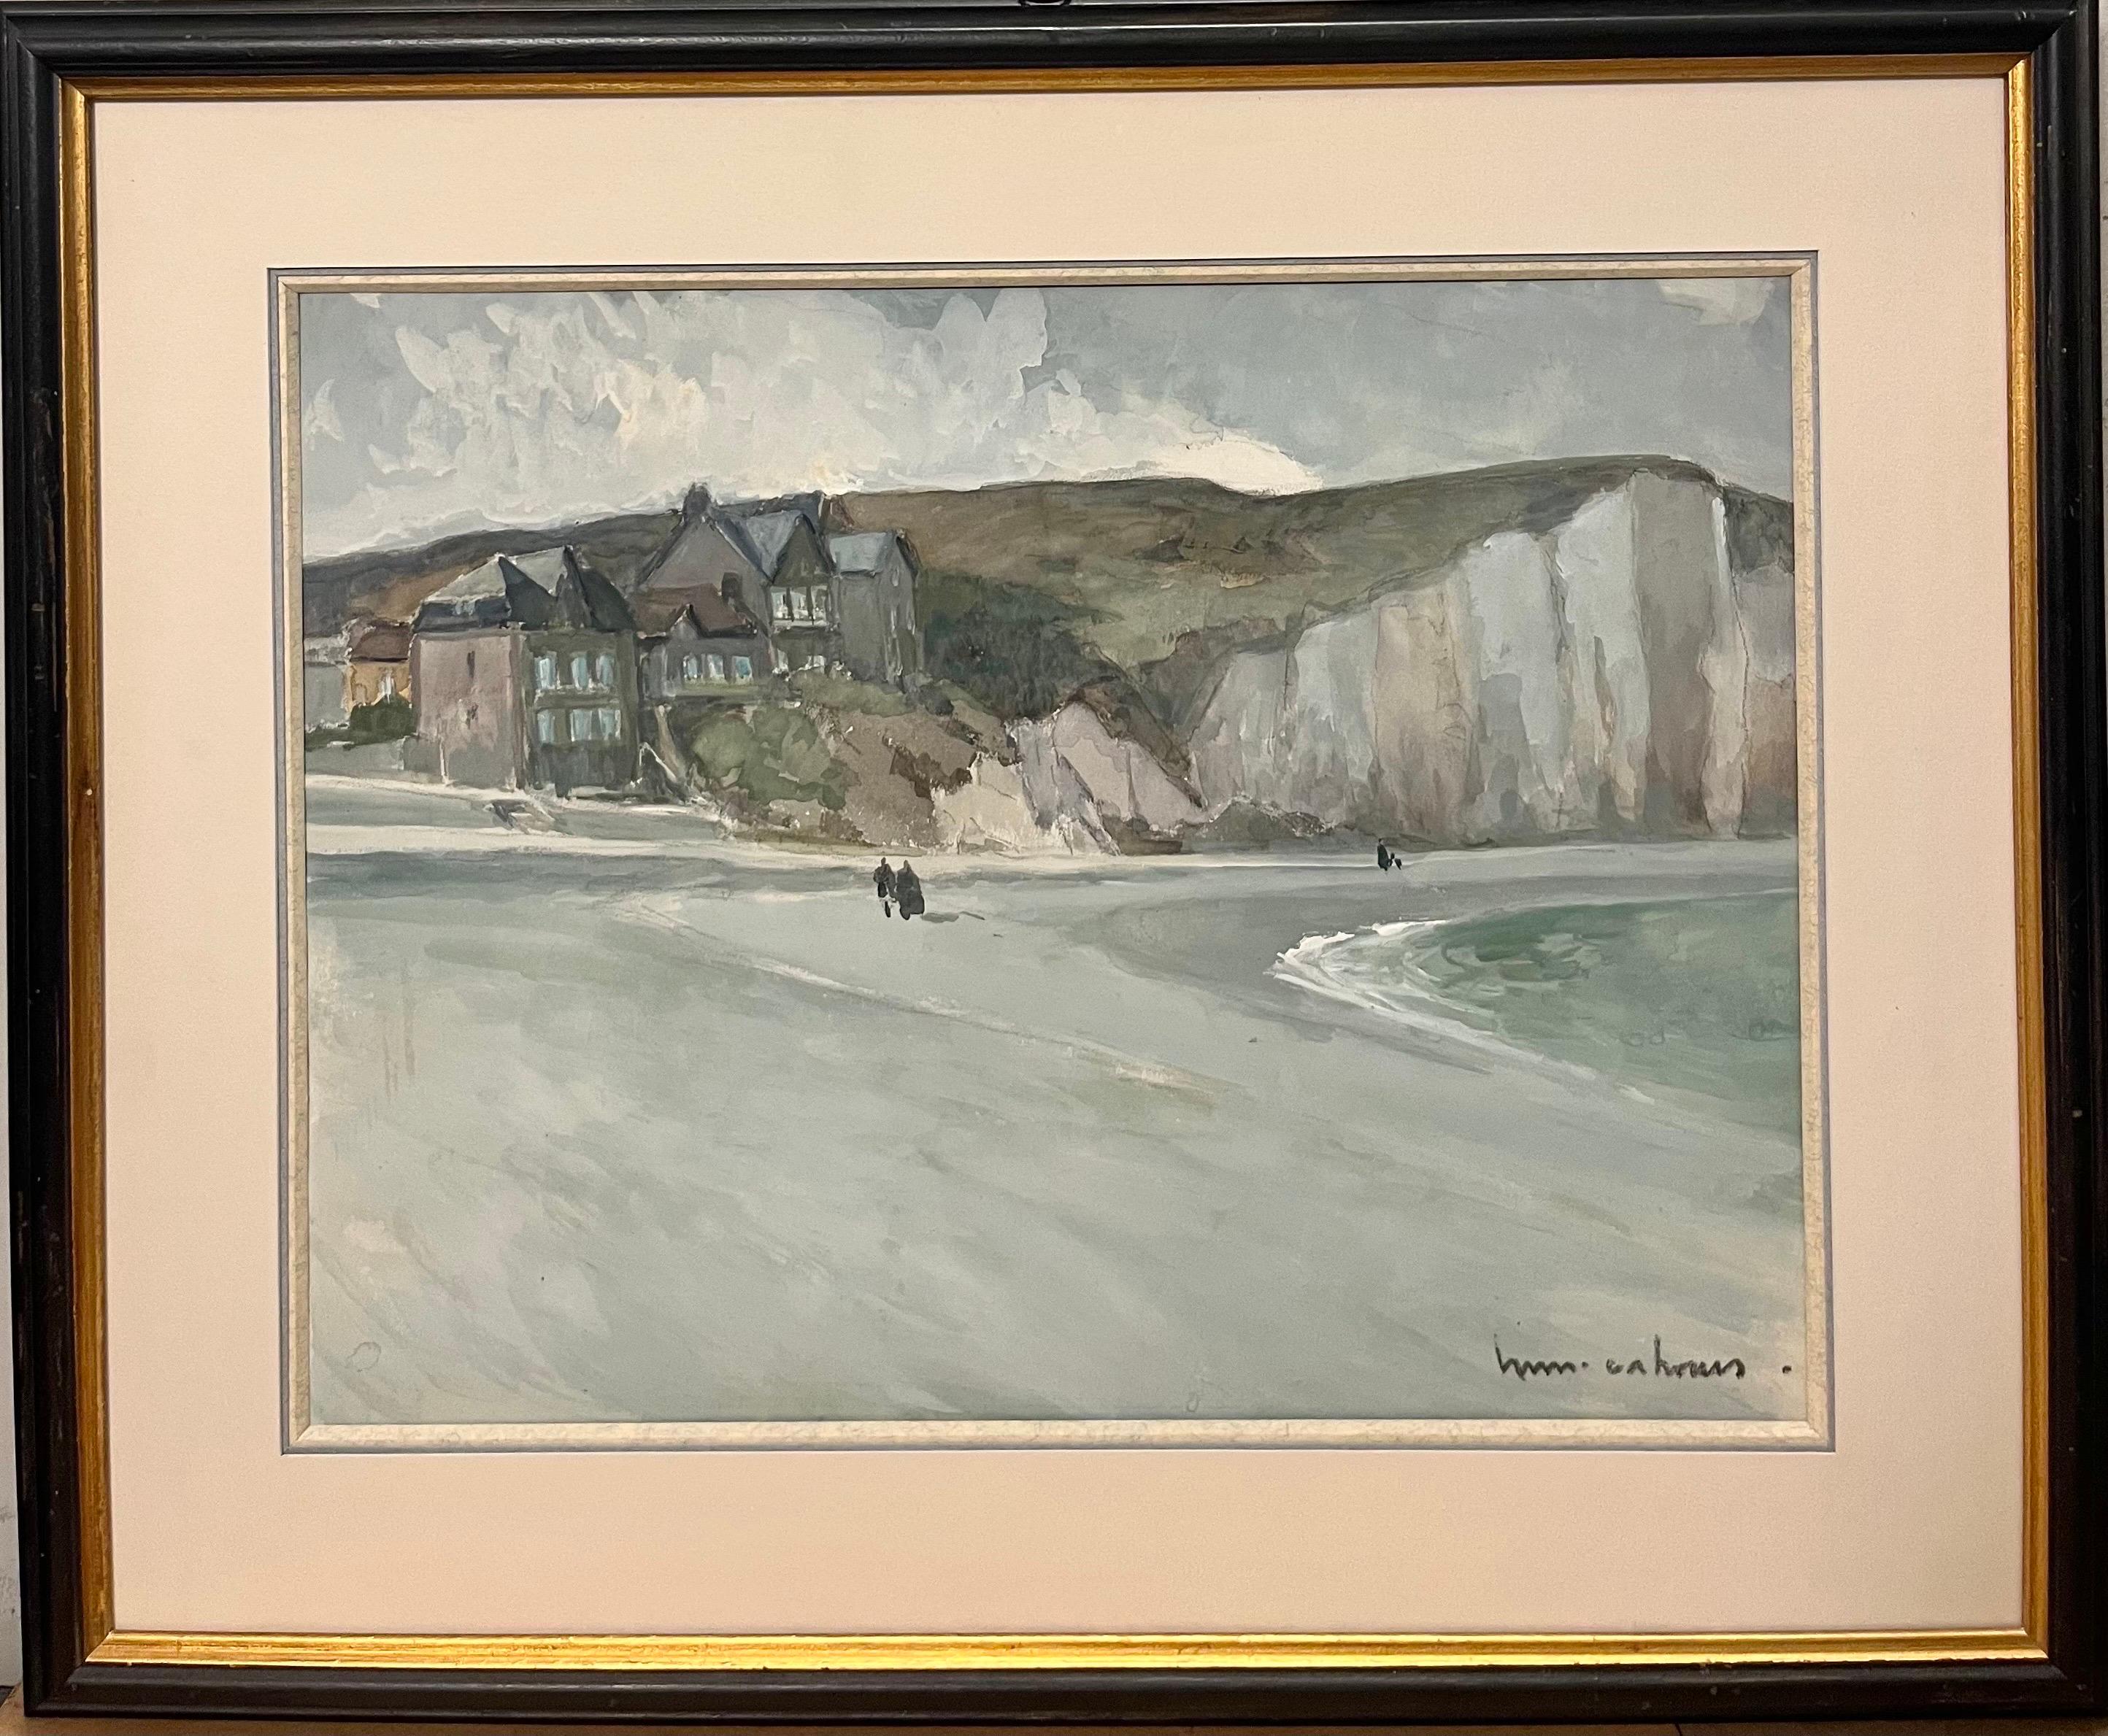 Henry Maurice CAHOURS Landscape Art - "Petit Dalles beach "Normandy France Gouache cm. 34 x 45 1940